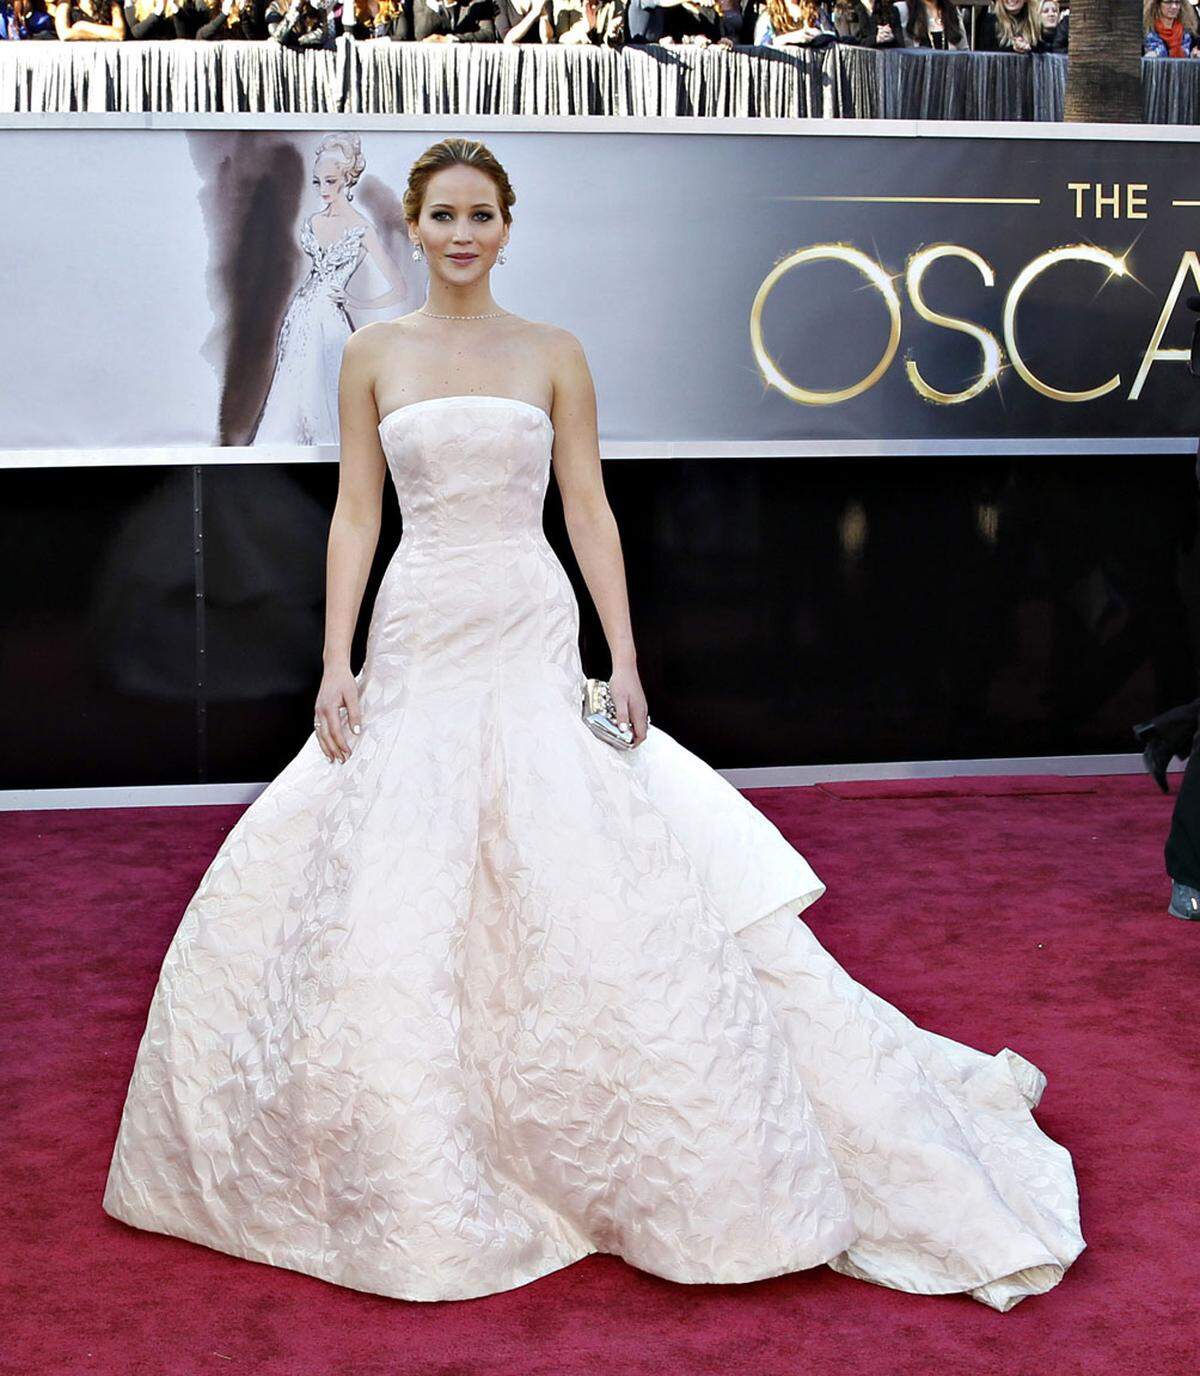 2013 stand Jennifer Lawrence nicht nur aufgrund ihrer schauspielerischen Leistungen, sondern auch aufgrund ihres Couture-Kleides von Dior im Mittelpunkt der Award-Veranstaltung. Sie gewann für ihre Rolle in "Silver Linings".